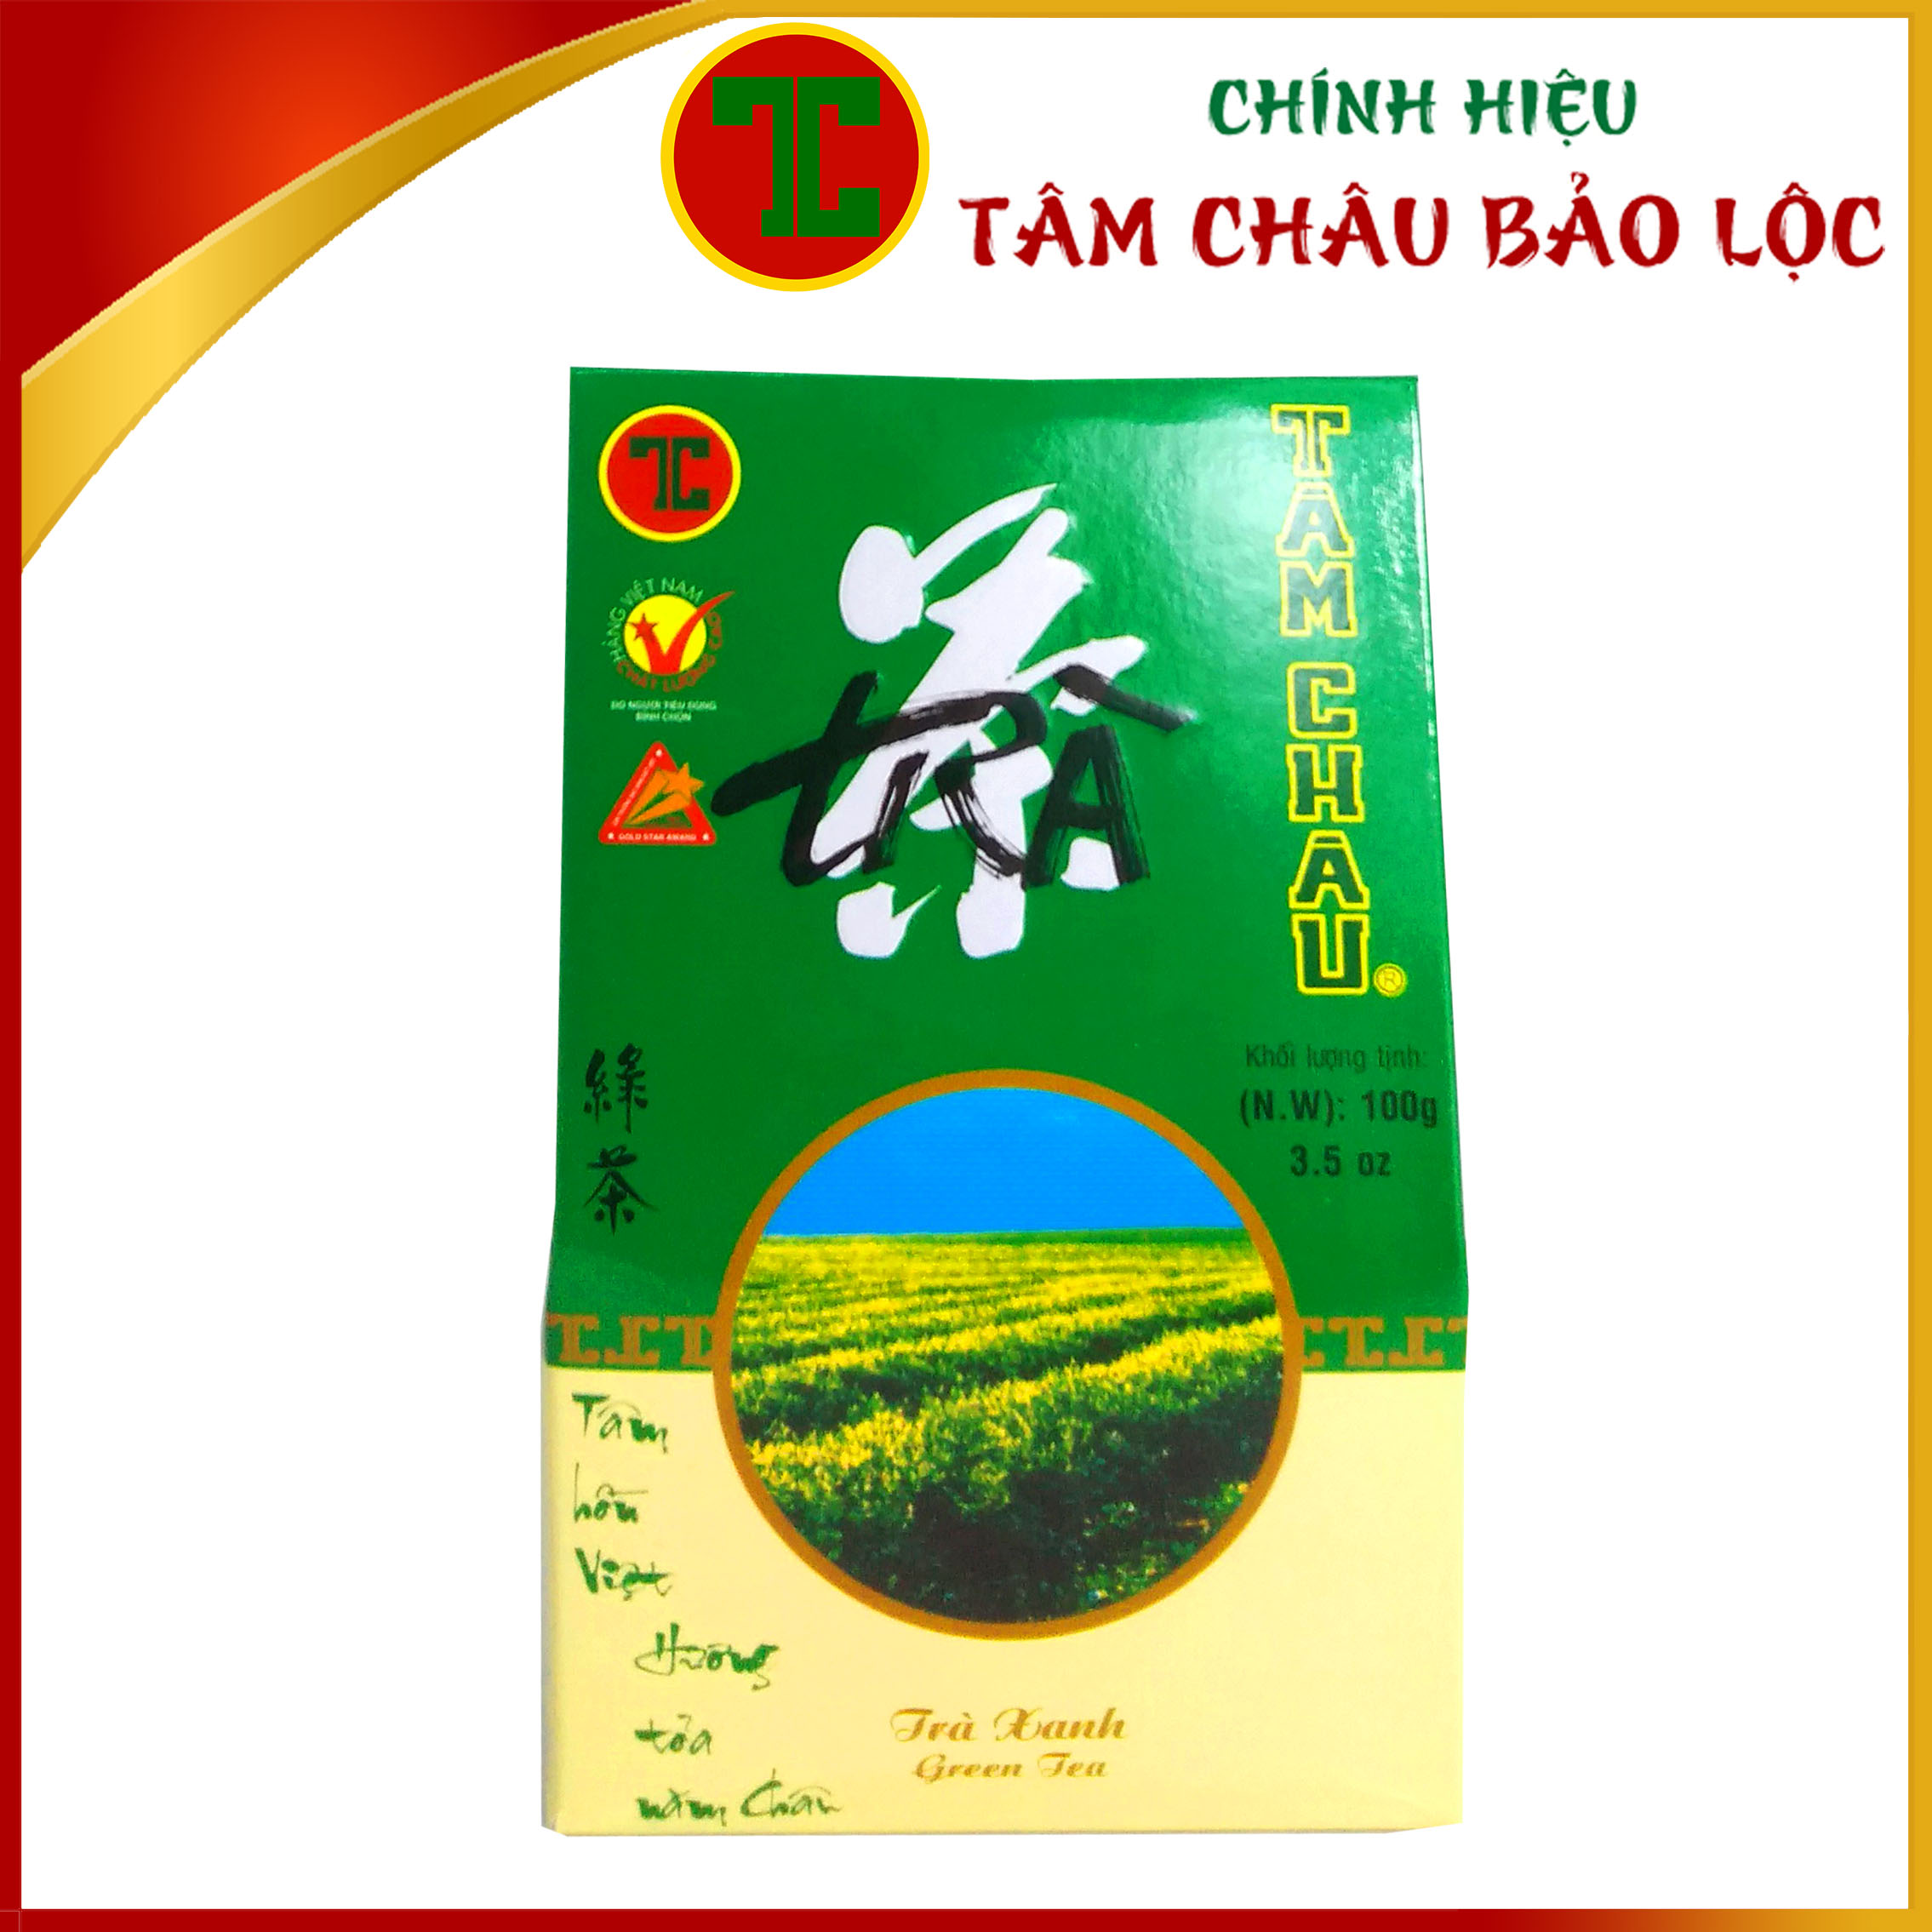 FLASH SALE Trà Xanh Việt Nam 100G Hộp Giấy Sang Trọng - Chính hiệu TÂM